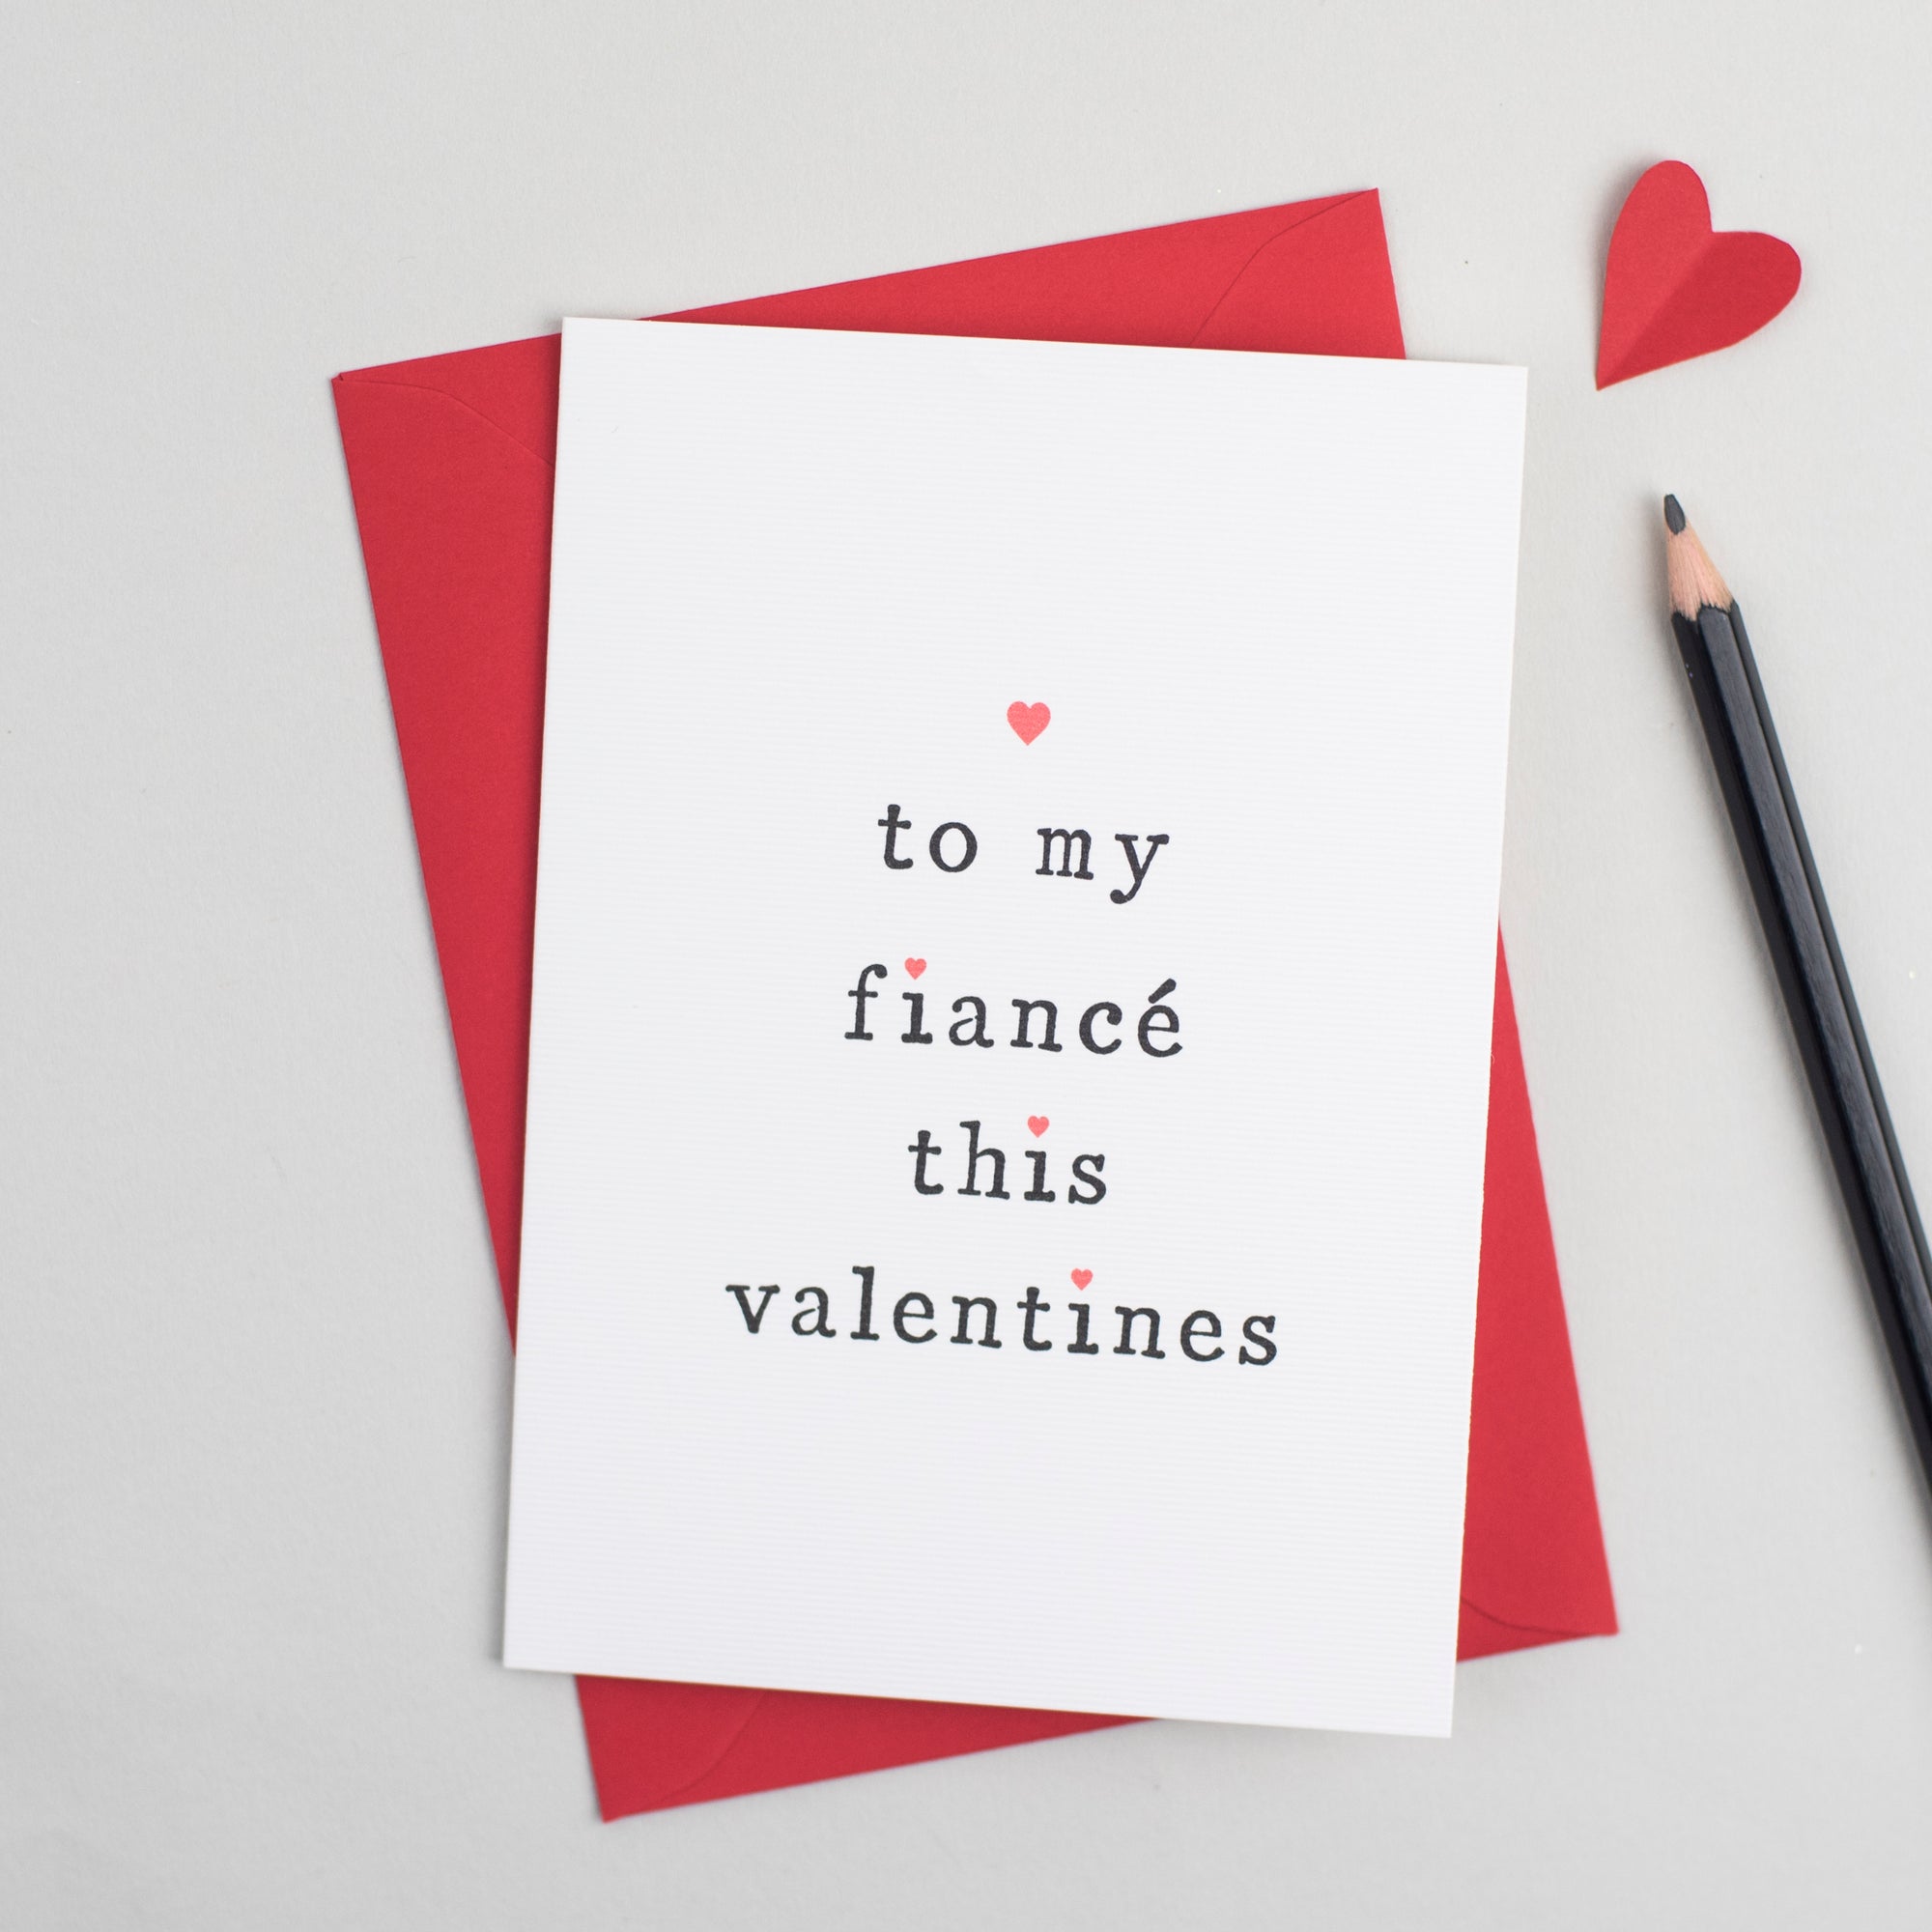 'To My Fiancé or Fiancée' Valentine's Day Card